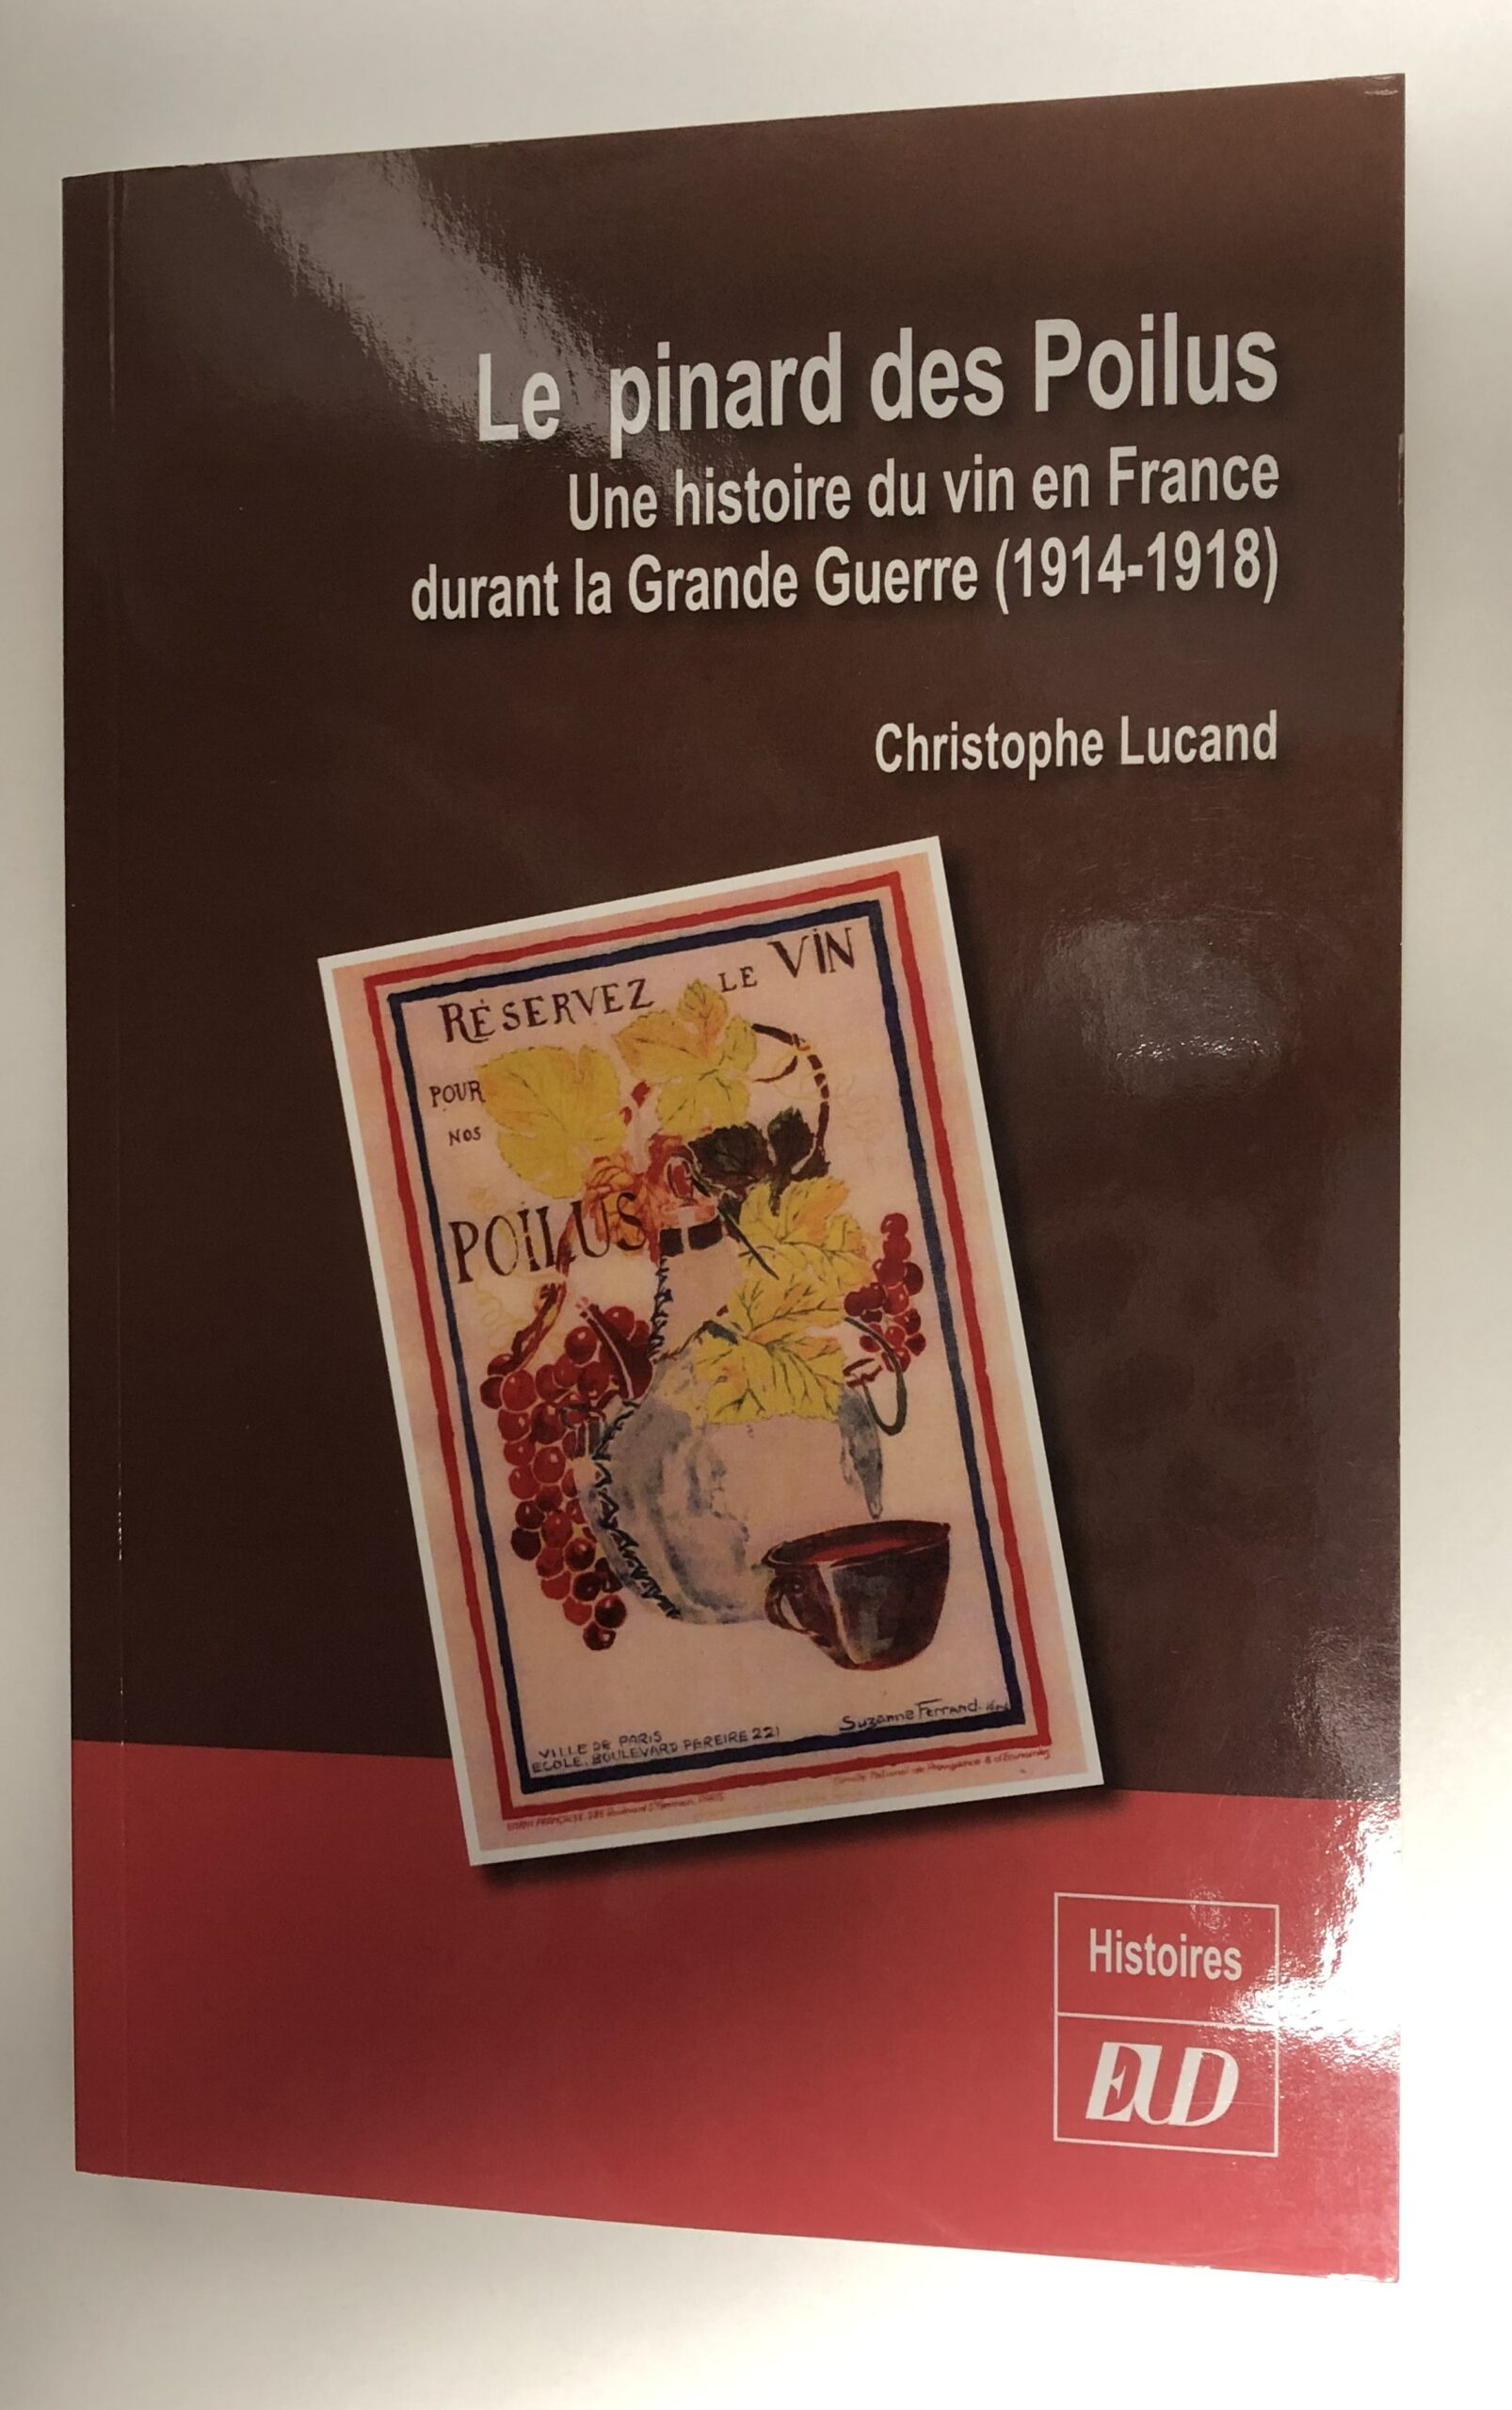 Livre “Pinard des poilus” de Christophe Lucand